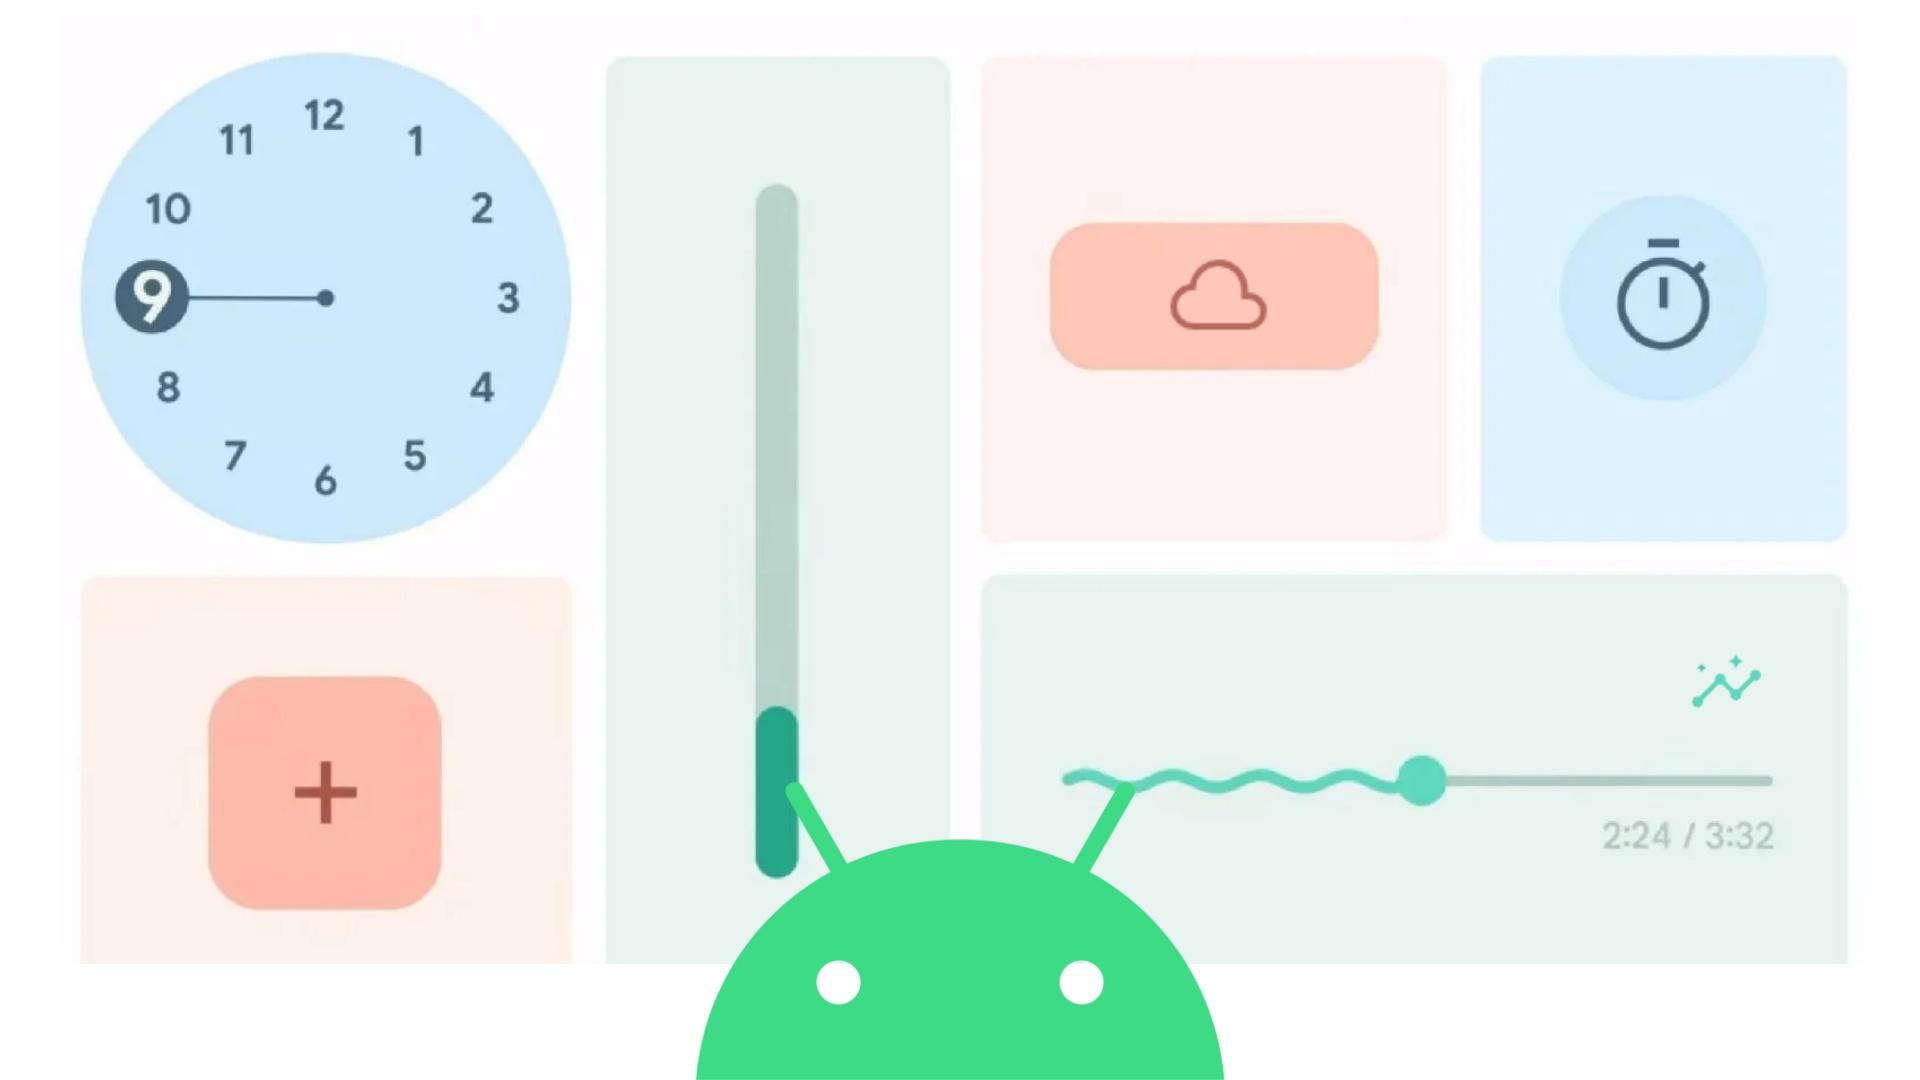 Imagem com fundo branco que contém elementos da interface de aplicativos Android, os elementos possuem cores variadas. A logo do Android em verde pode ser vista na parte inferior ao centro da imagem